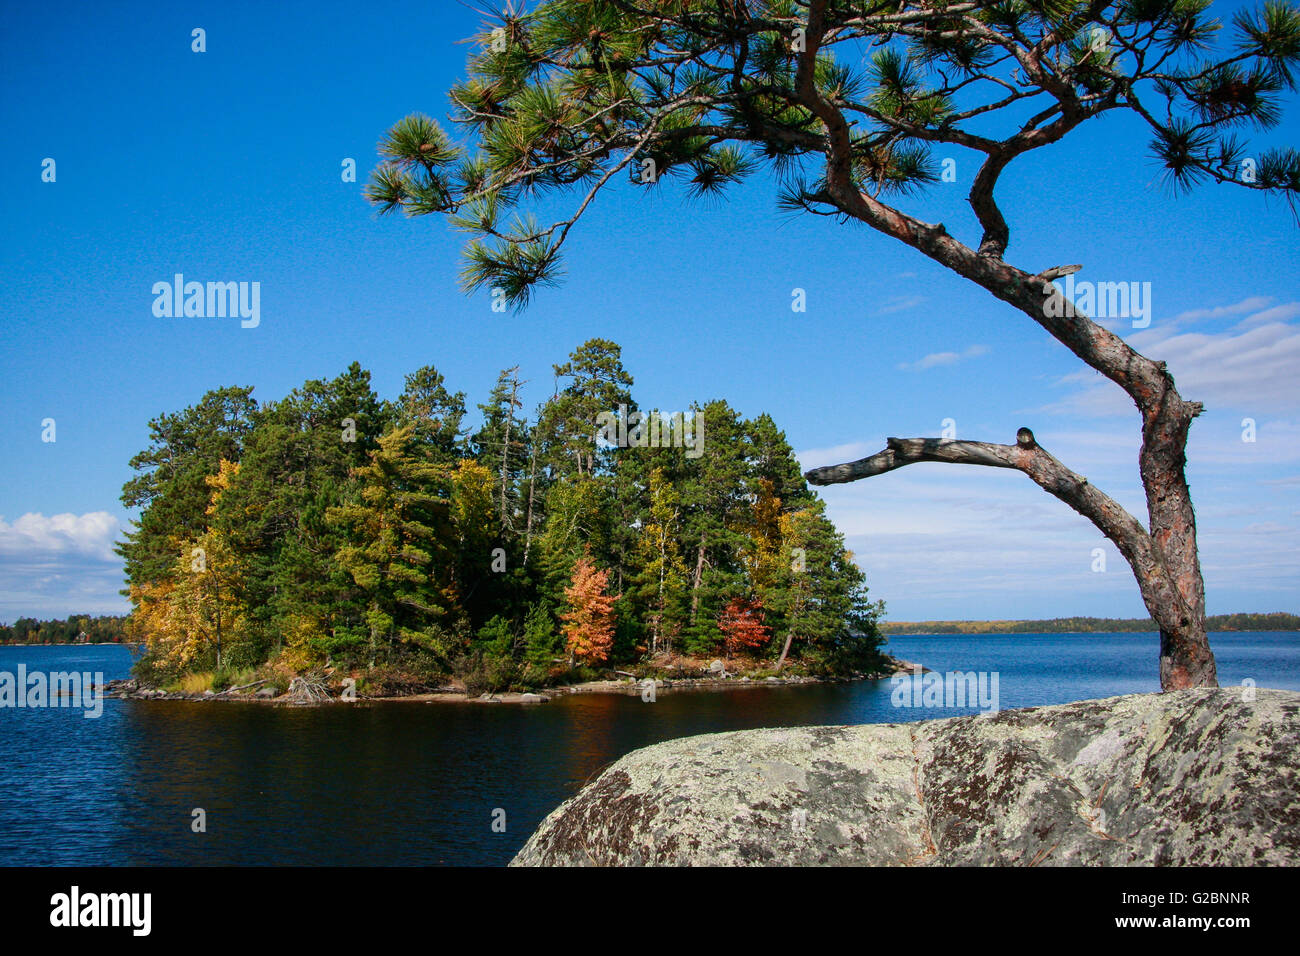 Un recedono pino bianco telai ad albero di un'altra isola sul lago Namakan, Parco nazionale Voyageurs, Minnesota, Stati Uniti d'America Foto Stock